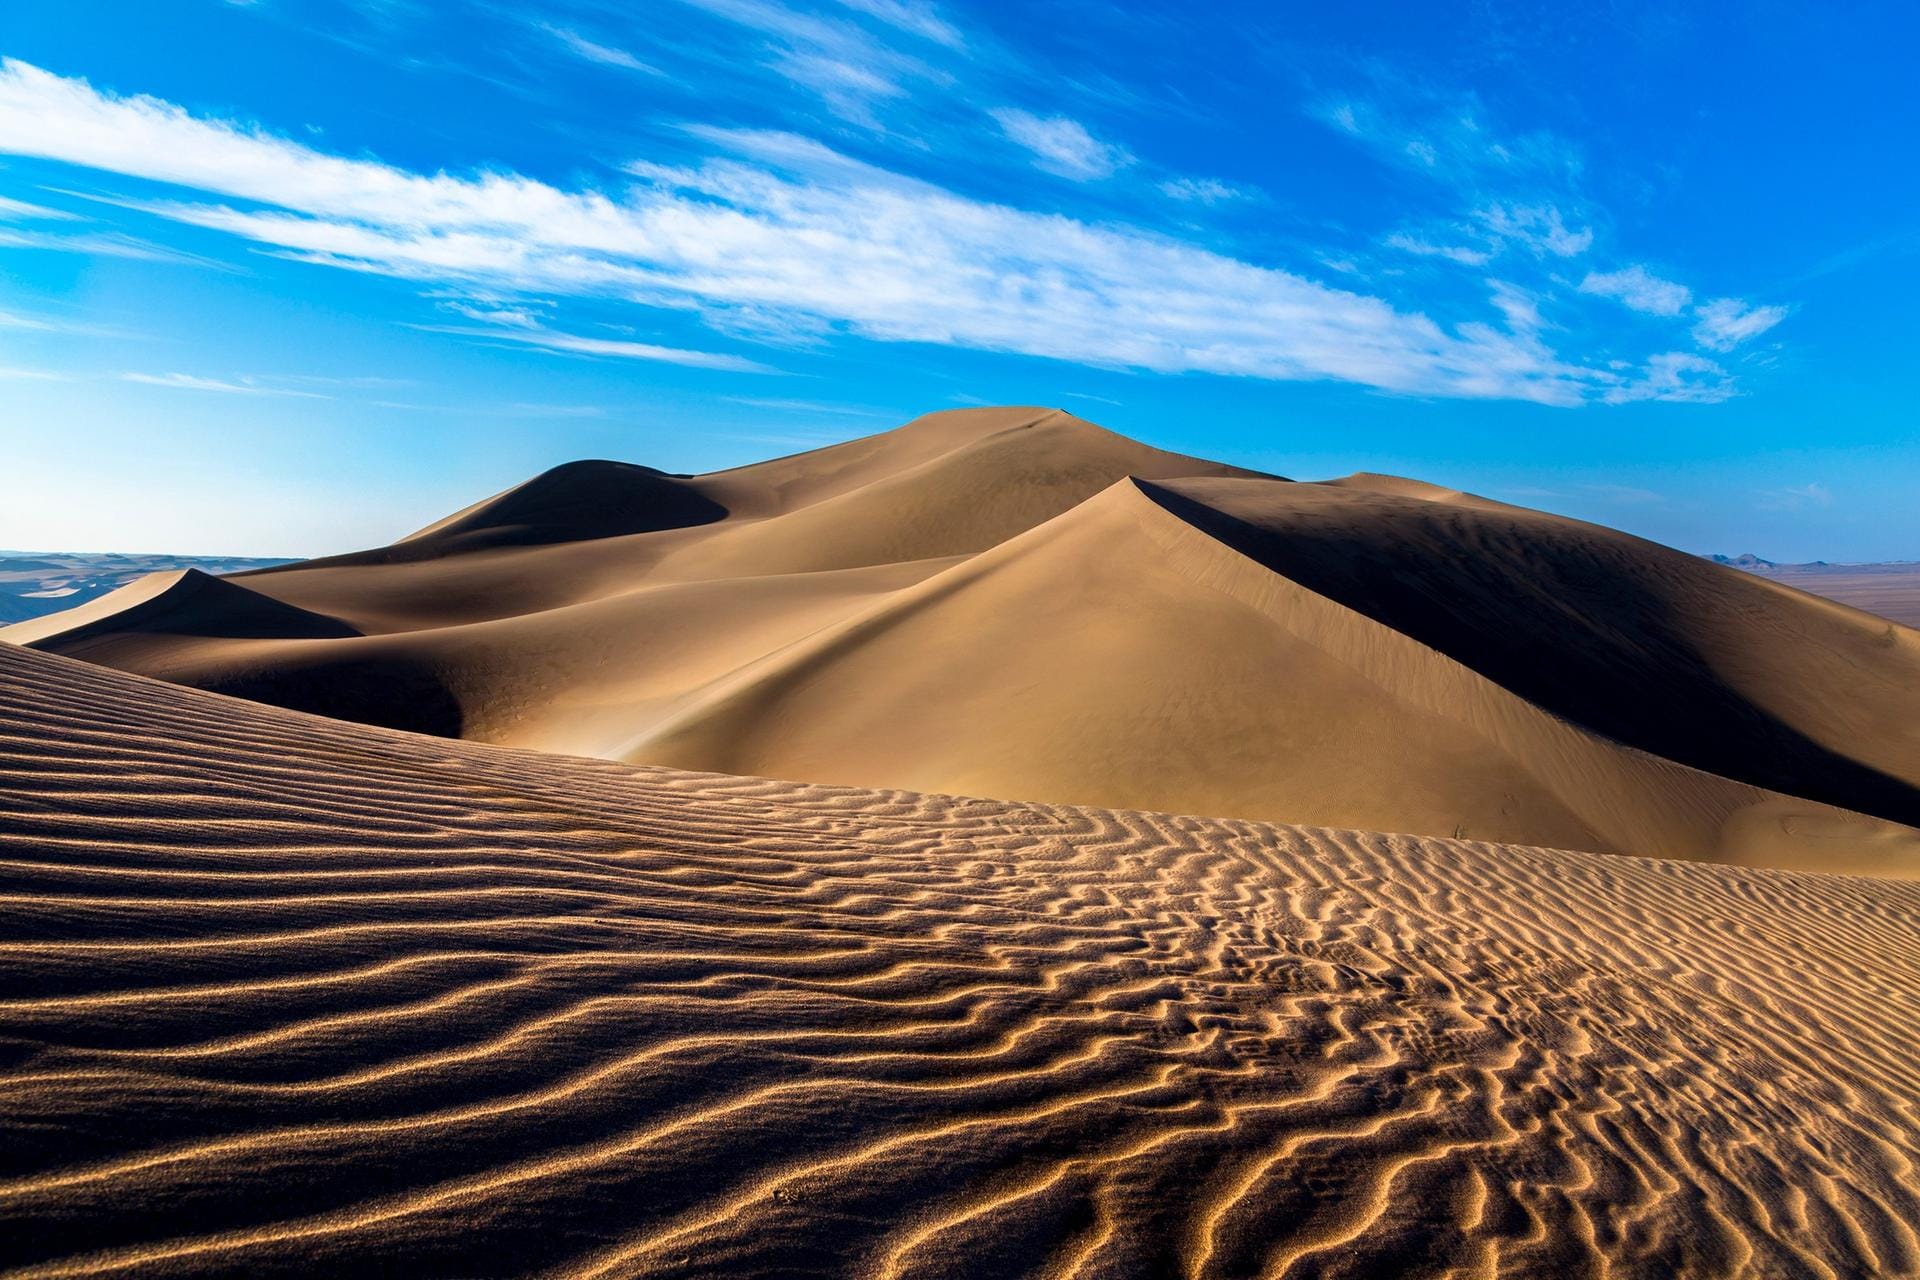 Von dichten Waldgebieten zur kargen Sandlandschaft. Die Wüste von Lut in Iran zeigt, wie unterschiedlich die Bewerbungen waren.